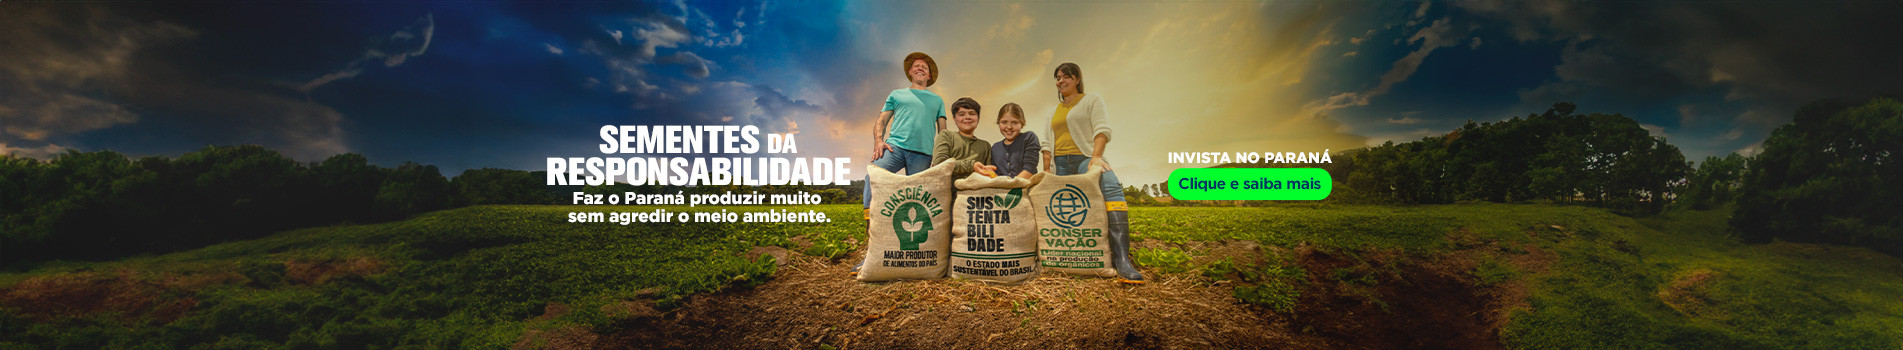 Sementes da responsabilidade faz o Paraná produzir muito sem agredir o meio ambiente - Invista no paraná - Clique e saiba mais